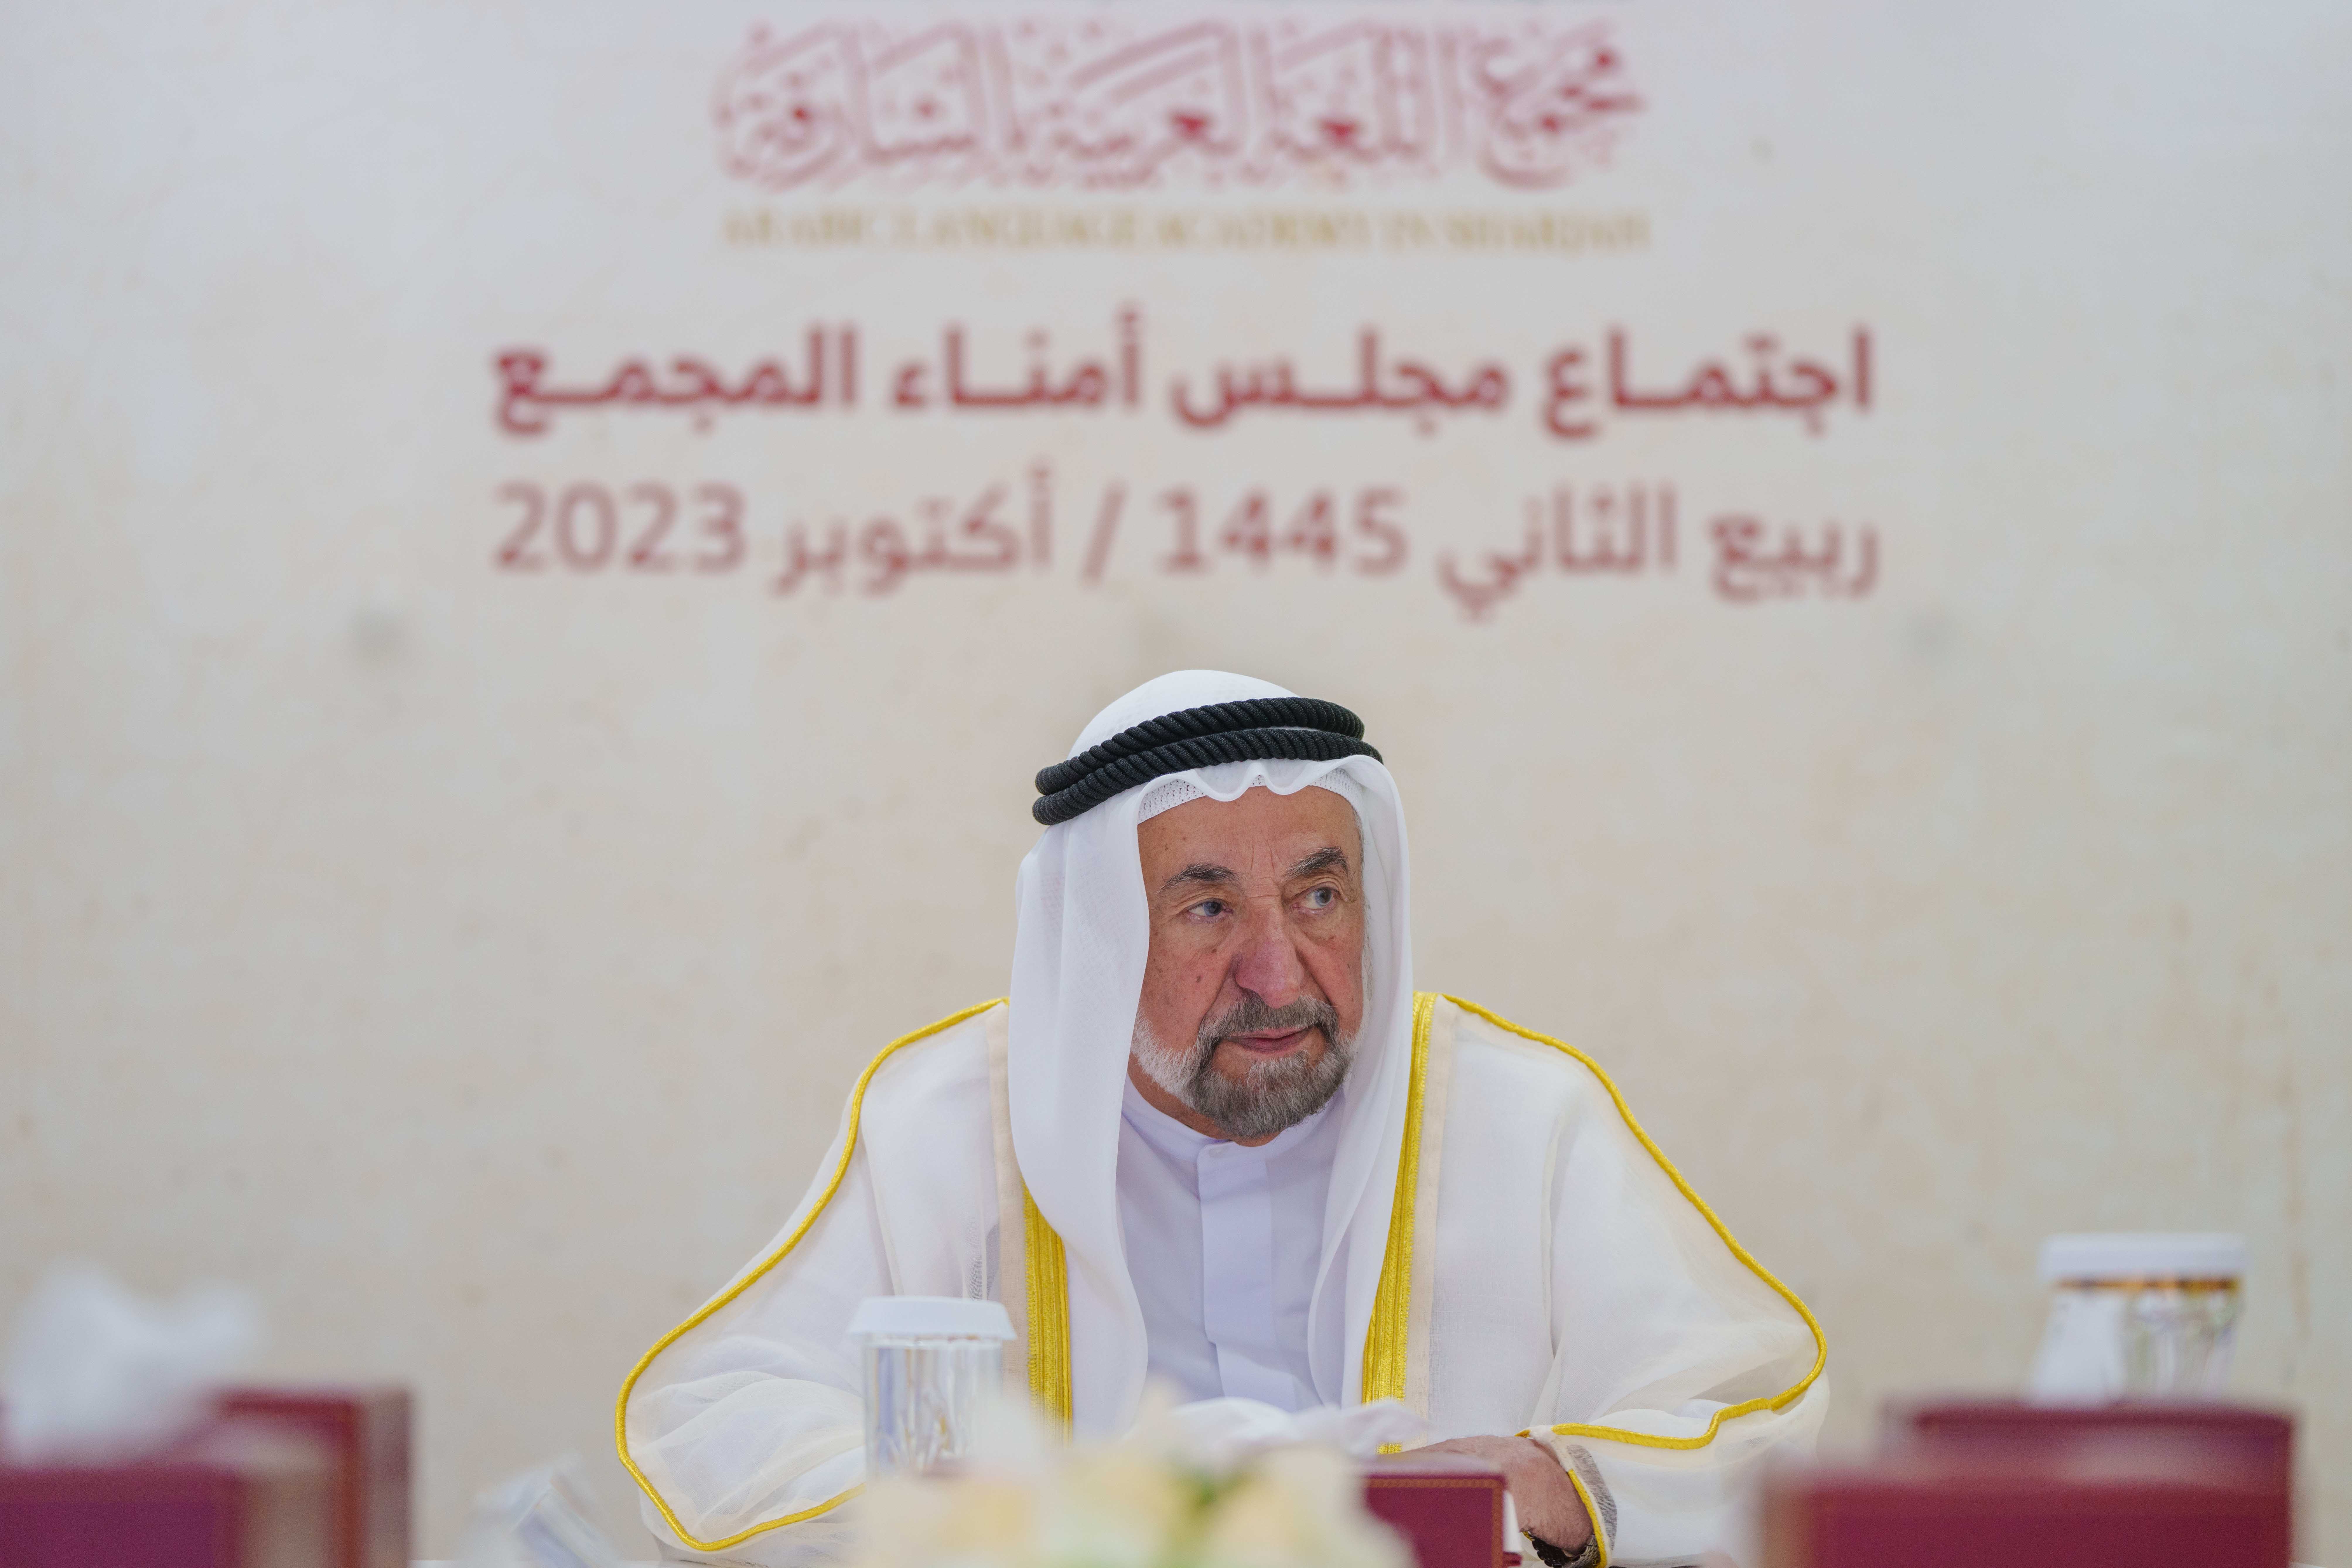 سلطان القاسمي يترأس الاجتماع الثاني لمجلس أمناء مجمع اللغة العربية بالشارقة